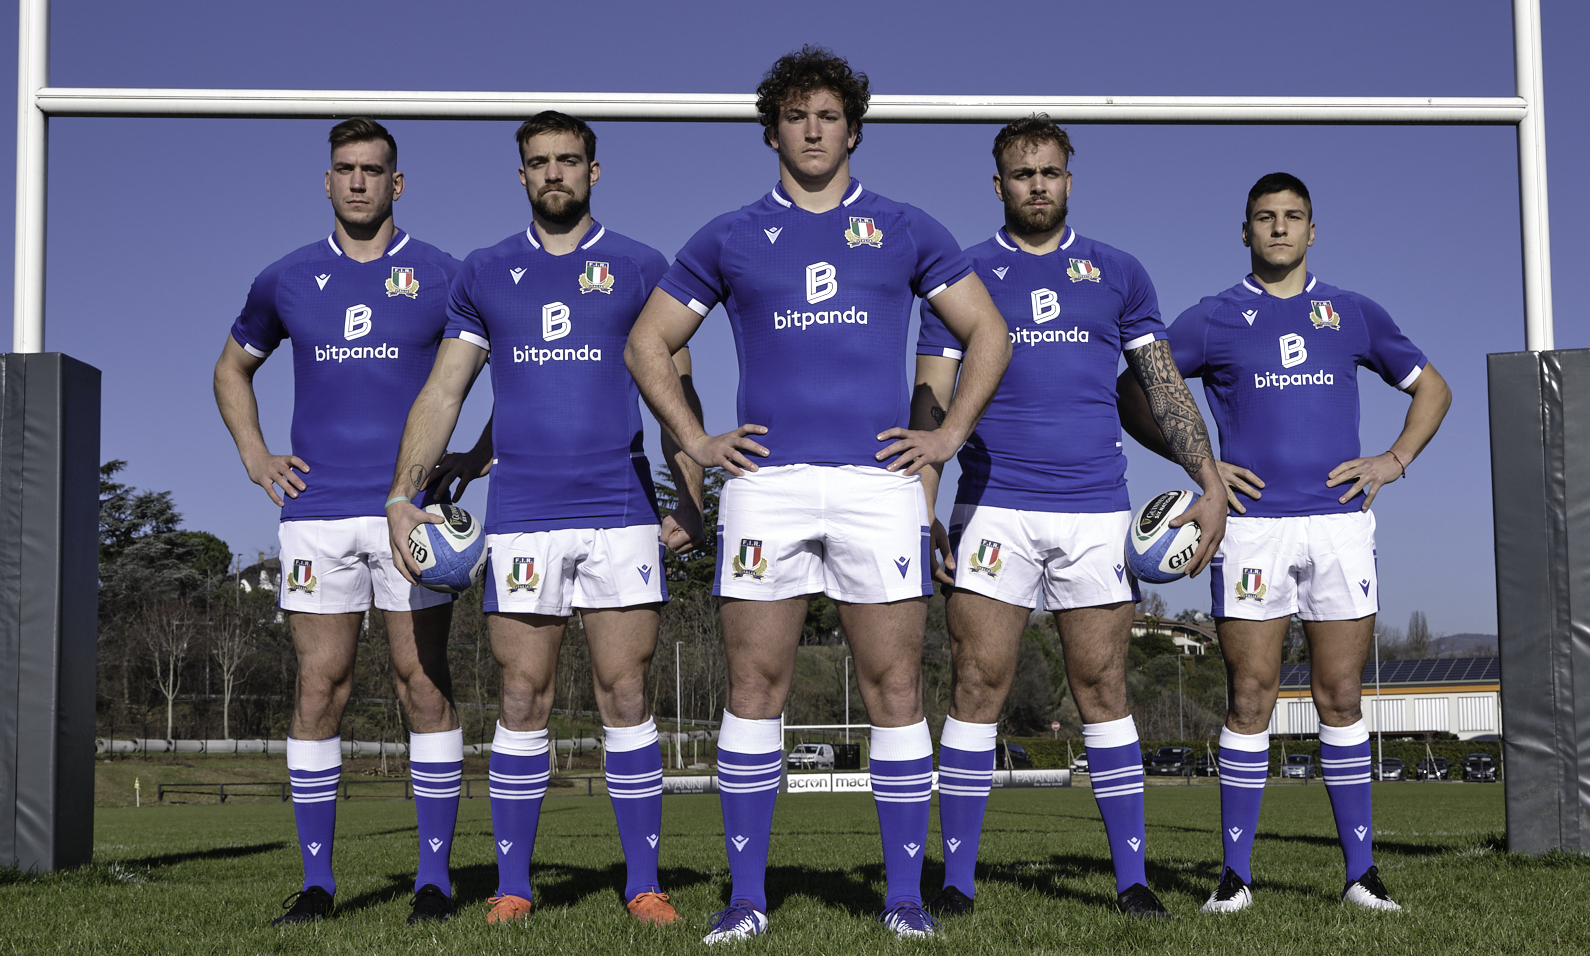 Campionato 6 Nazioni 2022 – Bitpanda New jersey sponsor della nazionale italiana di rugby